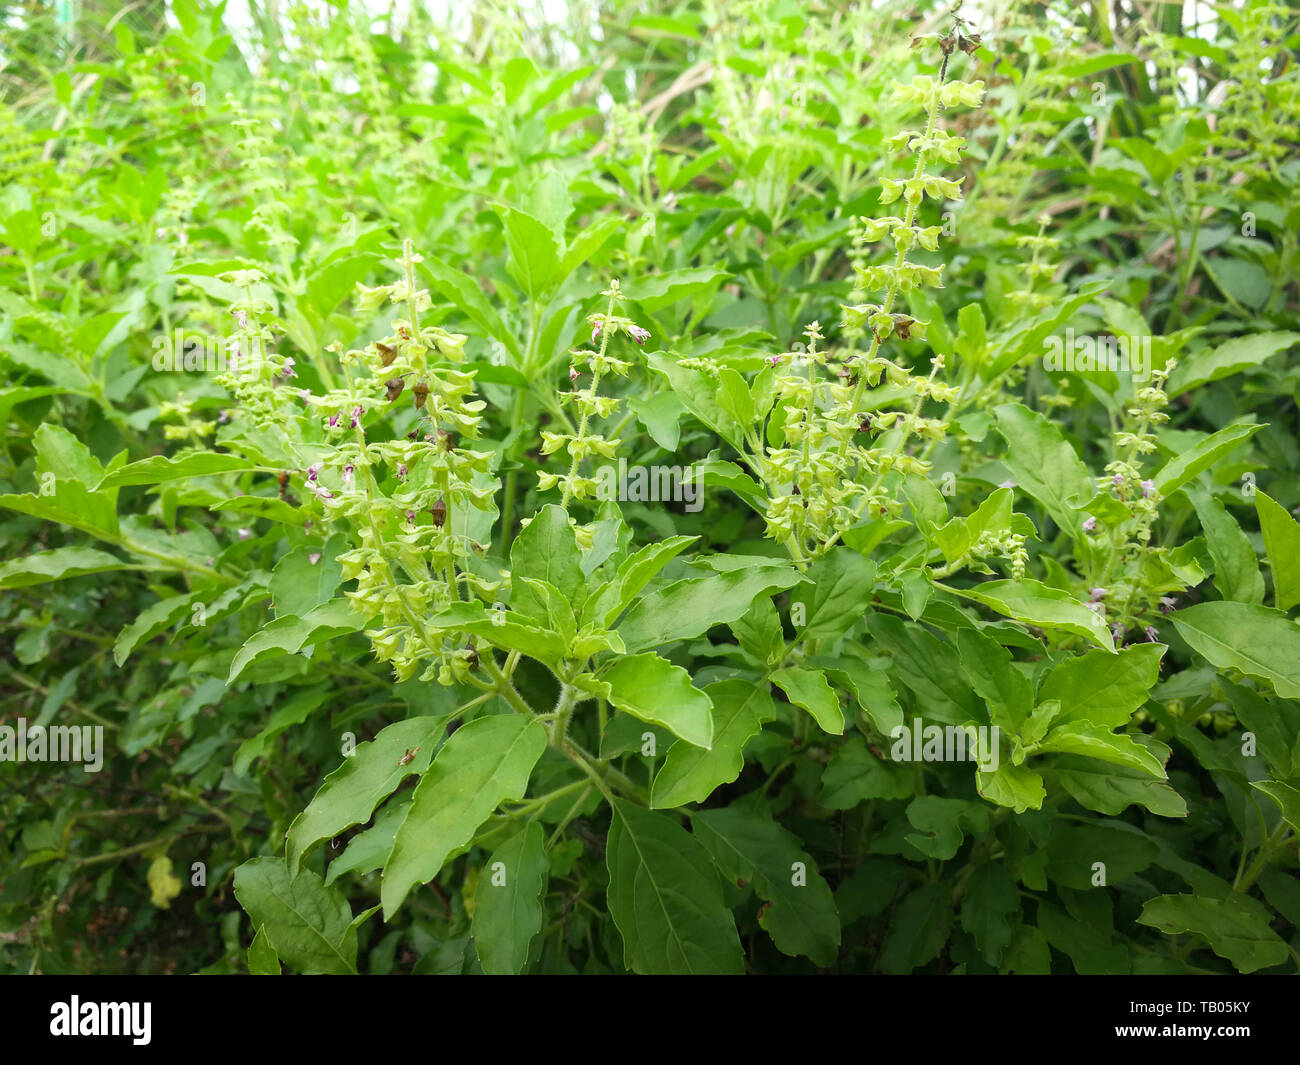 Heiliges Basilikum Blätter/Asien grüne Basilikum Baum und Blume Natur Gemüsegarten Hintergrund - ocimum Sanctum Stockfoto